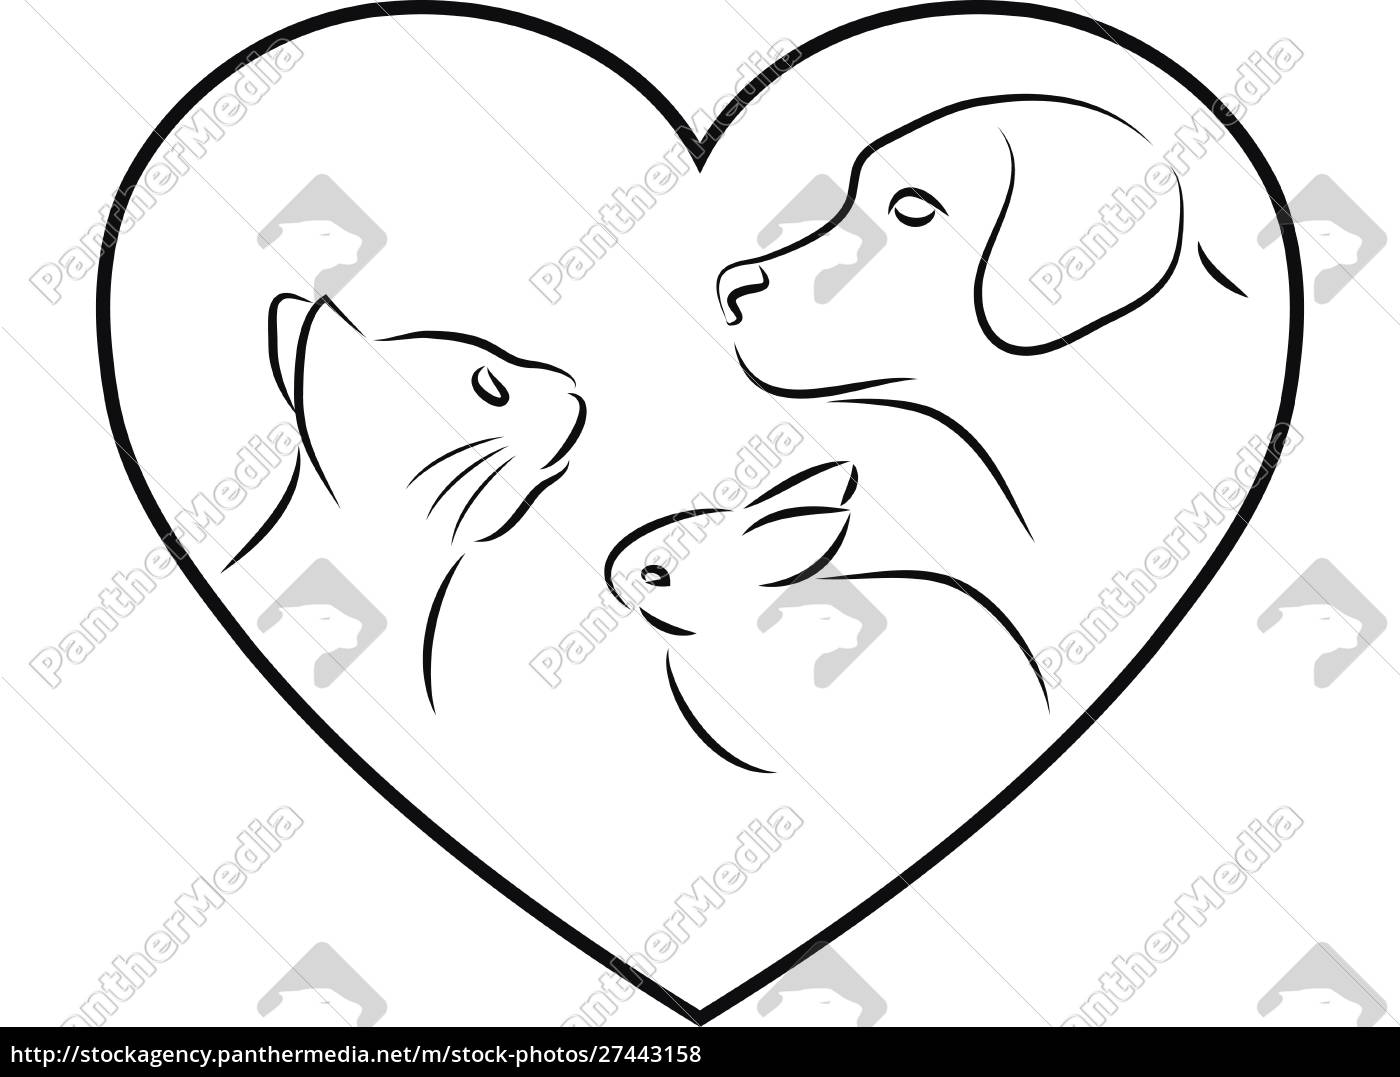 lade mareridt Gade Hjerte med hund kat og kanin dyrlæge logo - Stockphoto #27443158 |  PantherMedia Billedbureau